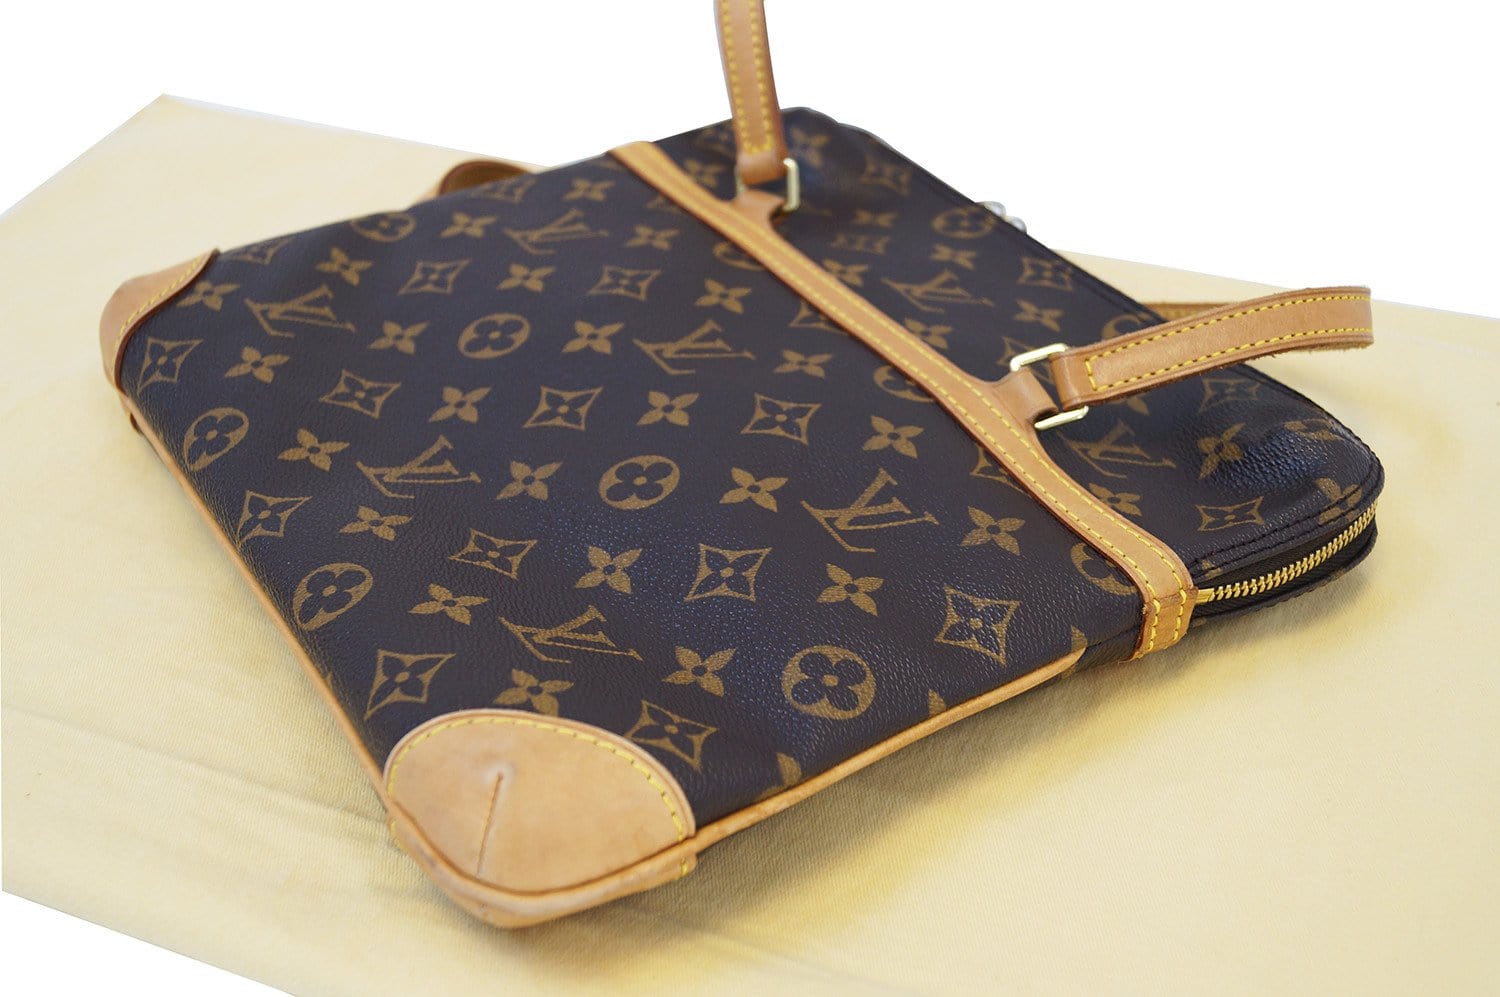 Louis Vuitton pre-owned Monogram Coussin GM Shoulder Bag - Farfetch